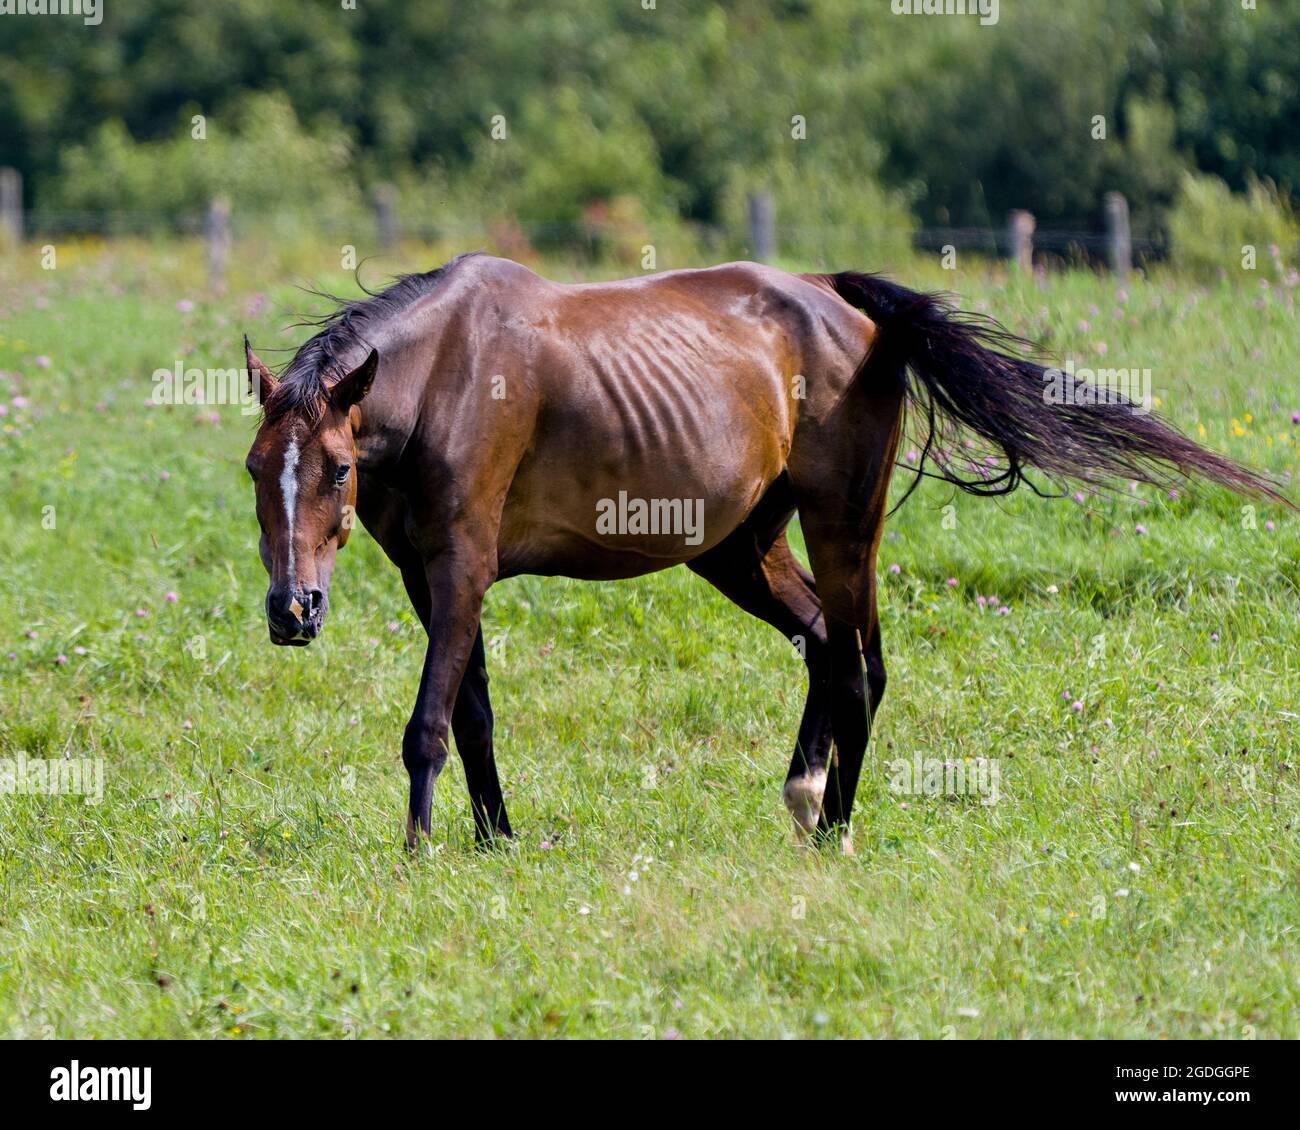 Nahaufnahme des Pferdes beim Wandern auf einem Wiesenfeld mit einer ruhigen Landschaft und der Sonne auf dem braunen, glänzenden Mantel. Stockfoto